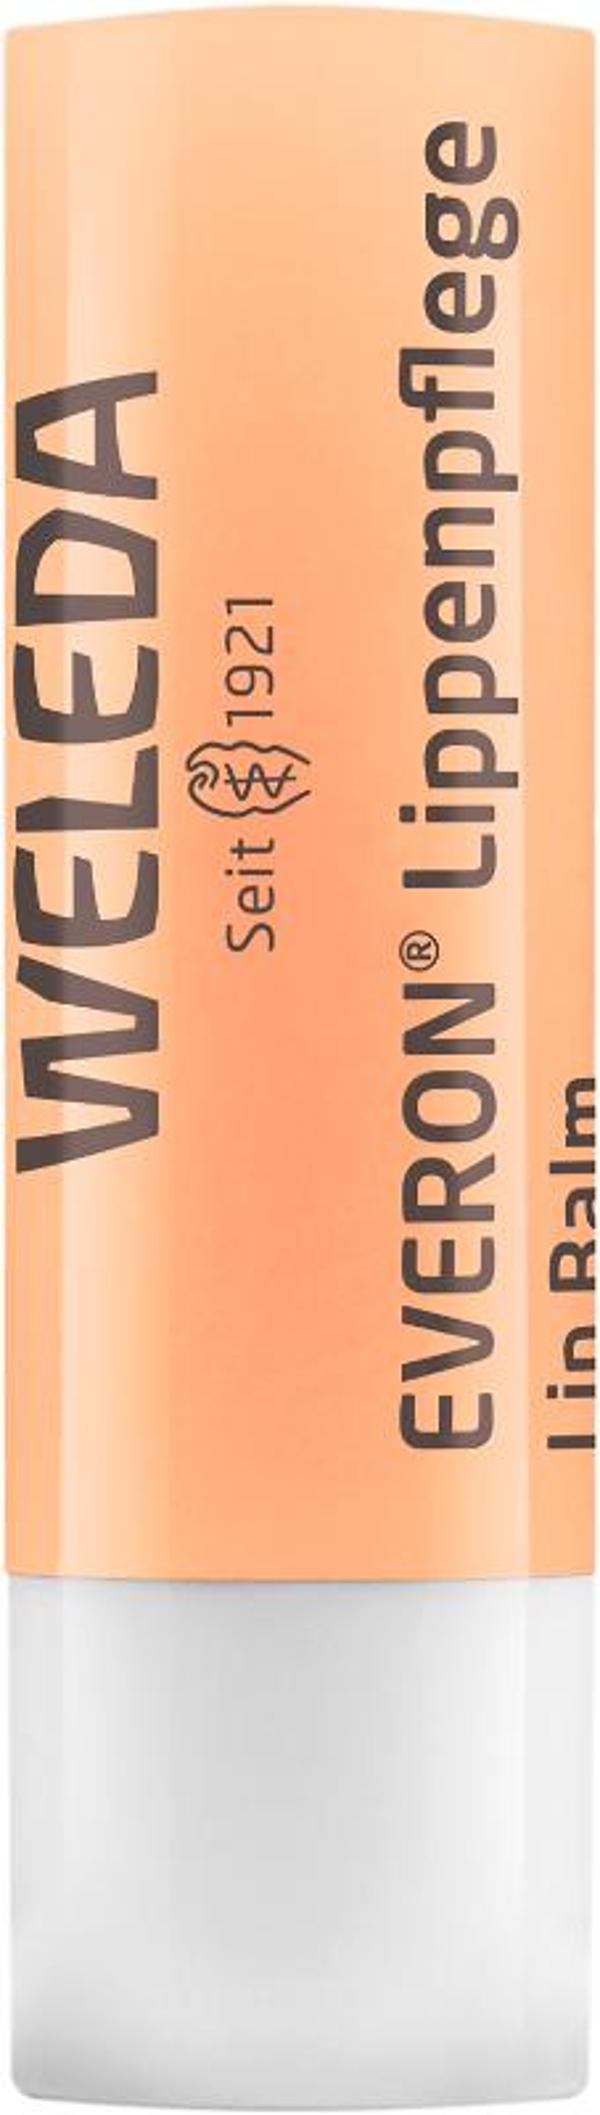 Produktfoto zu Everon Lippenpflege von Weleda